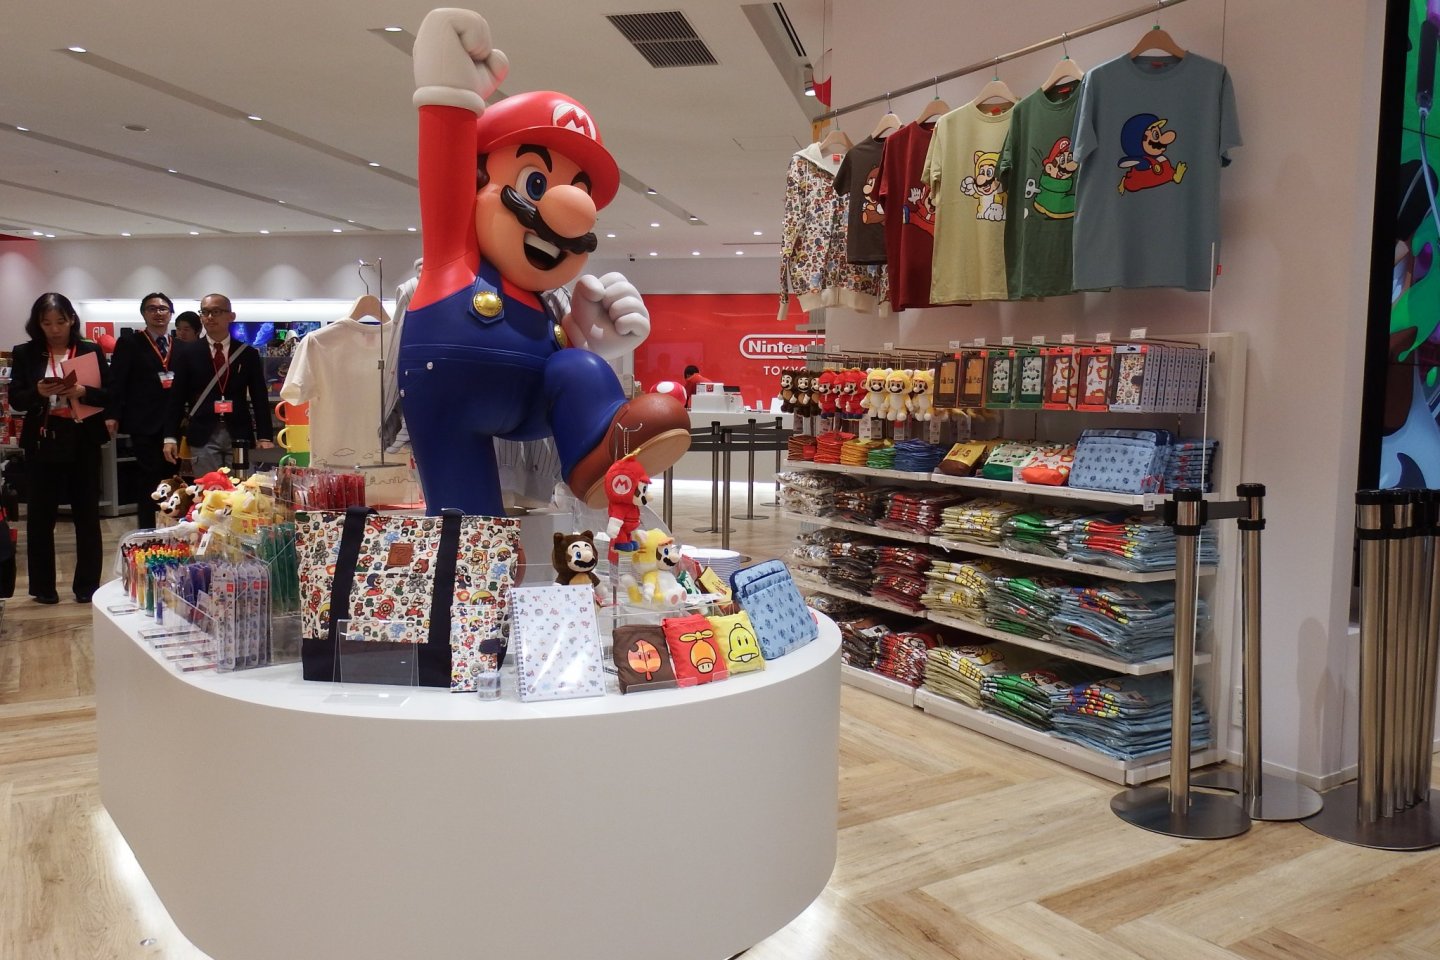 El mismo Mario te da la bienvenida